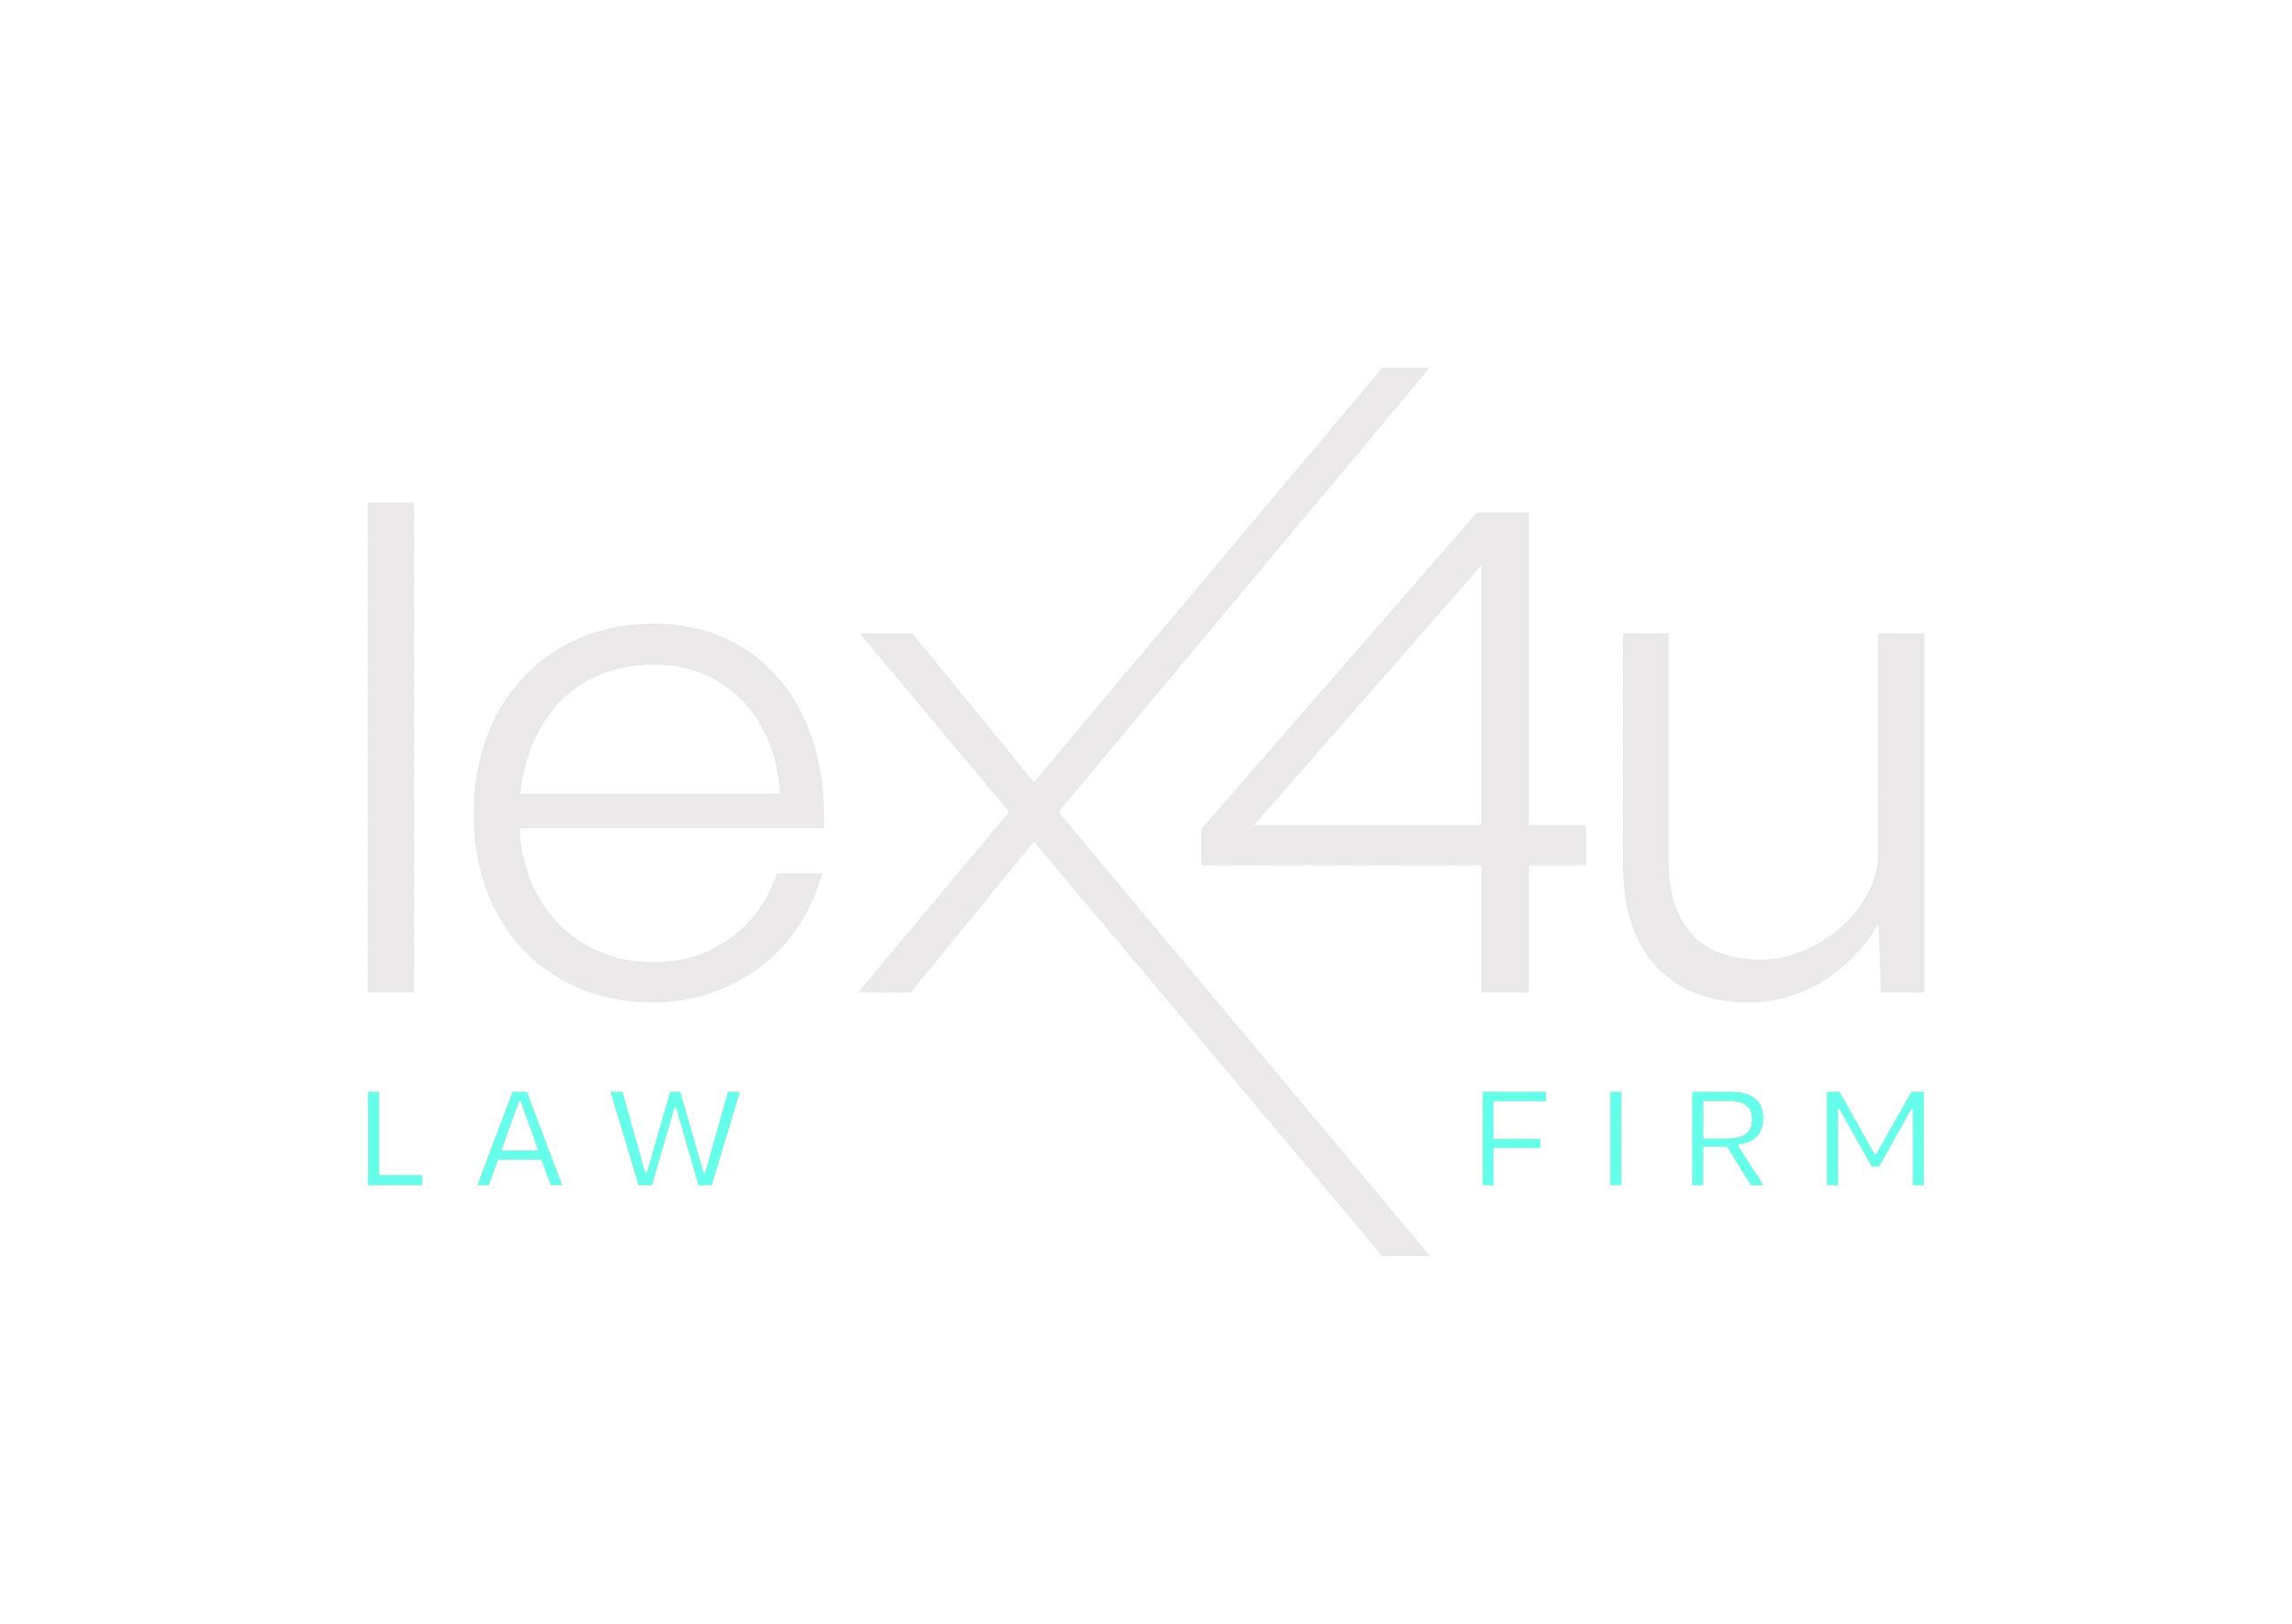 Lex4u Law Firm sur fond transparent